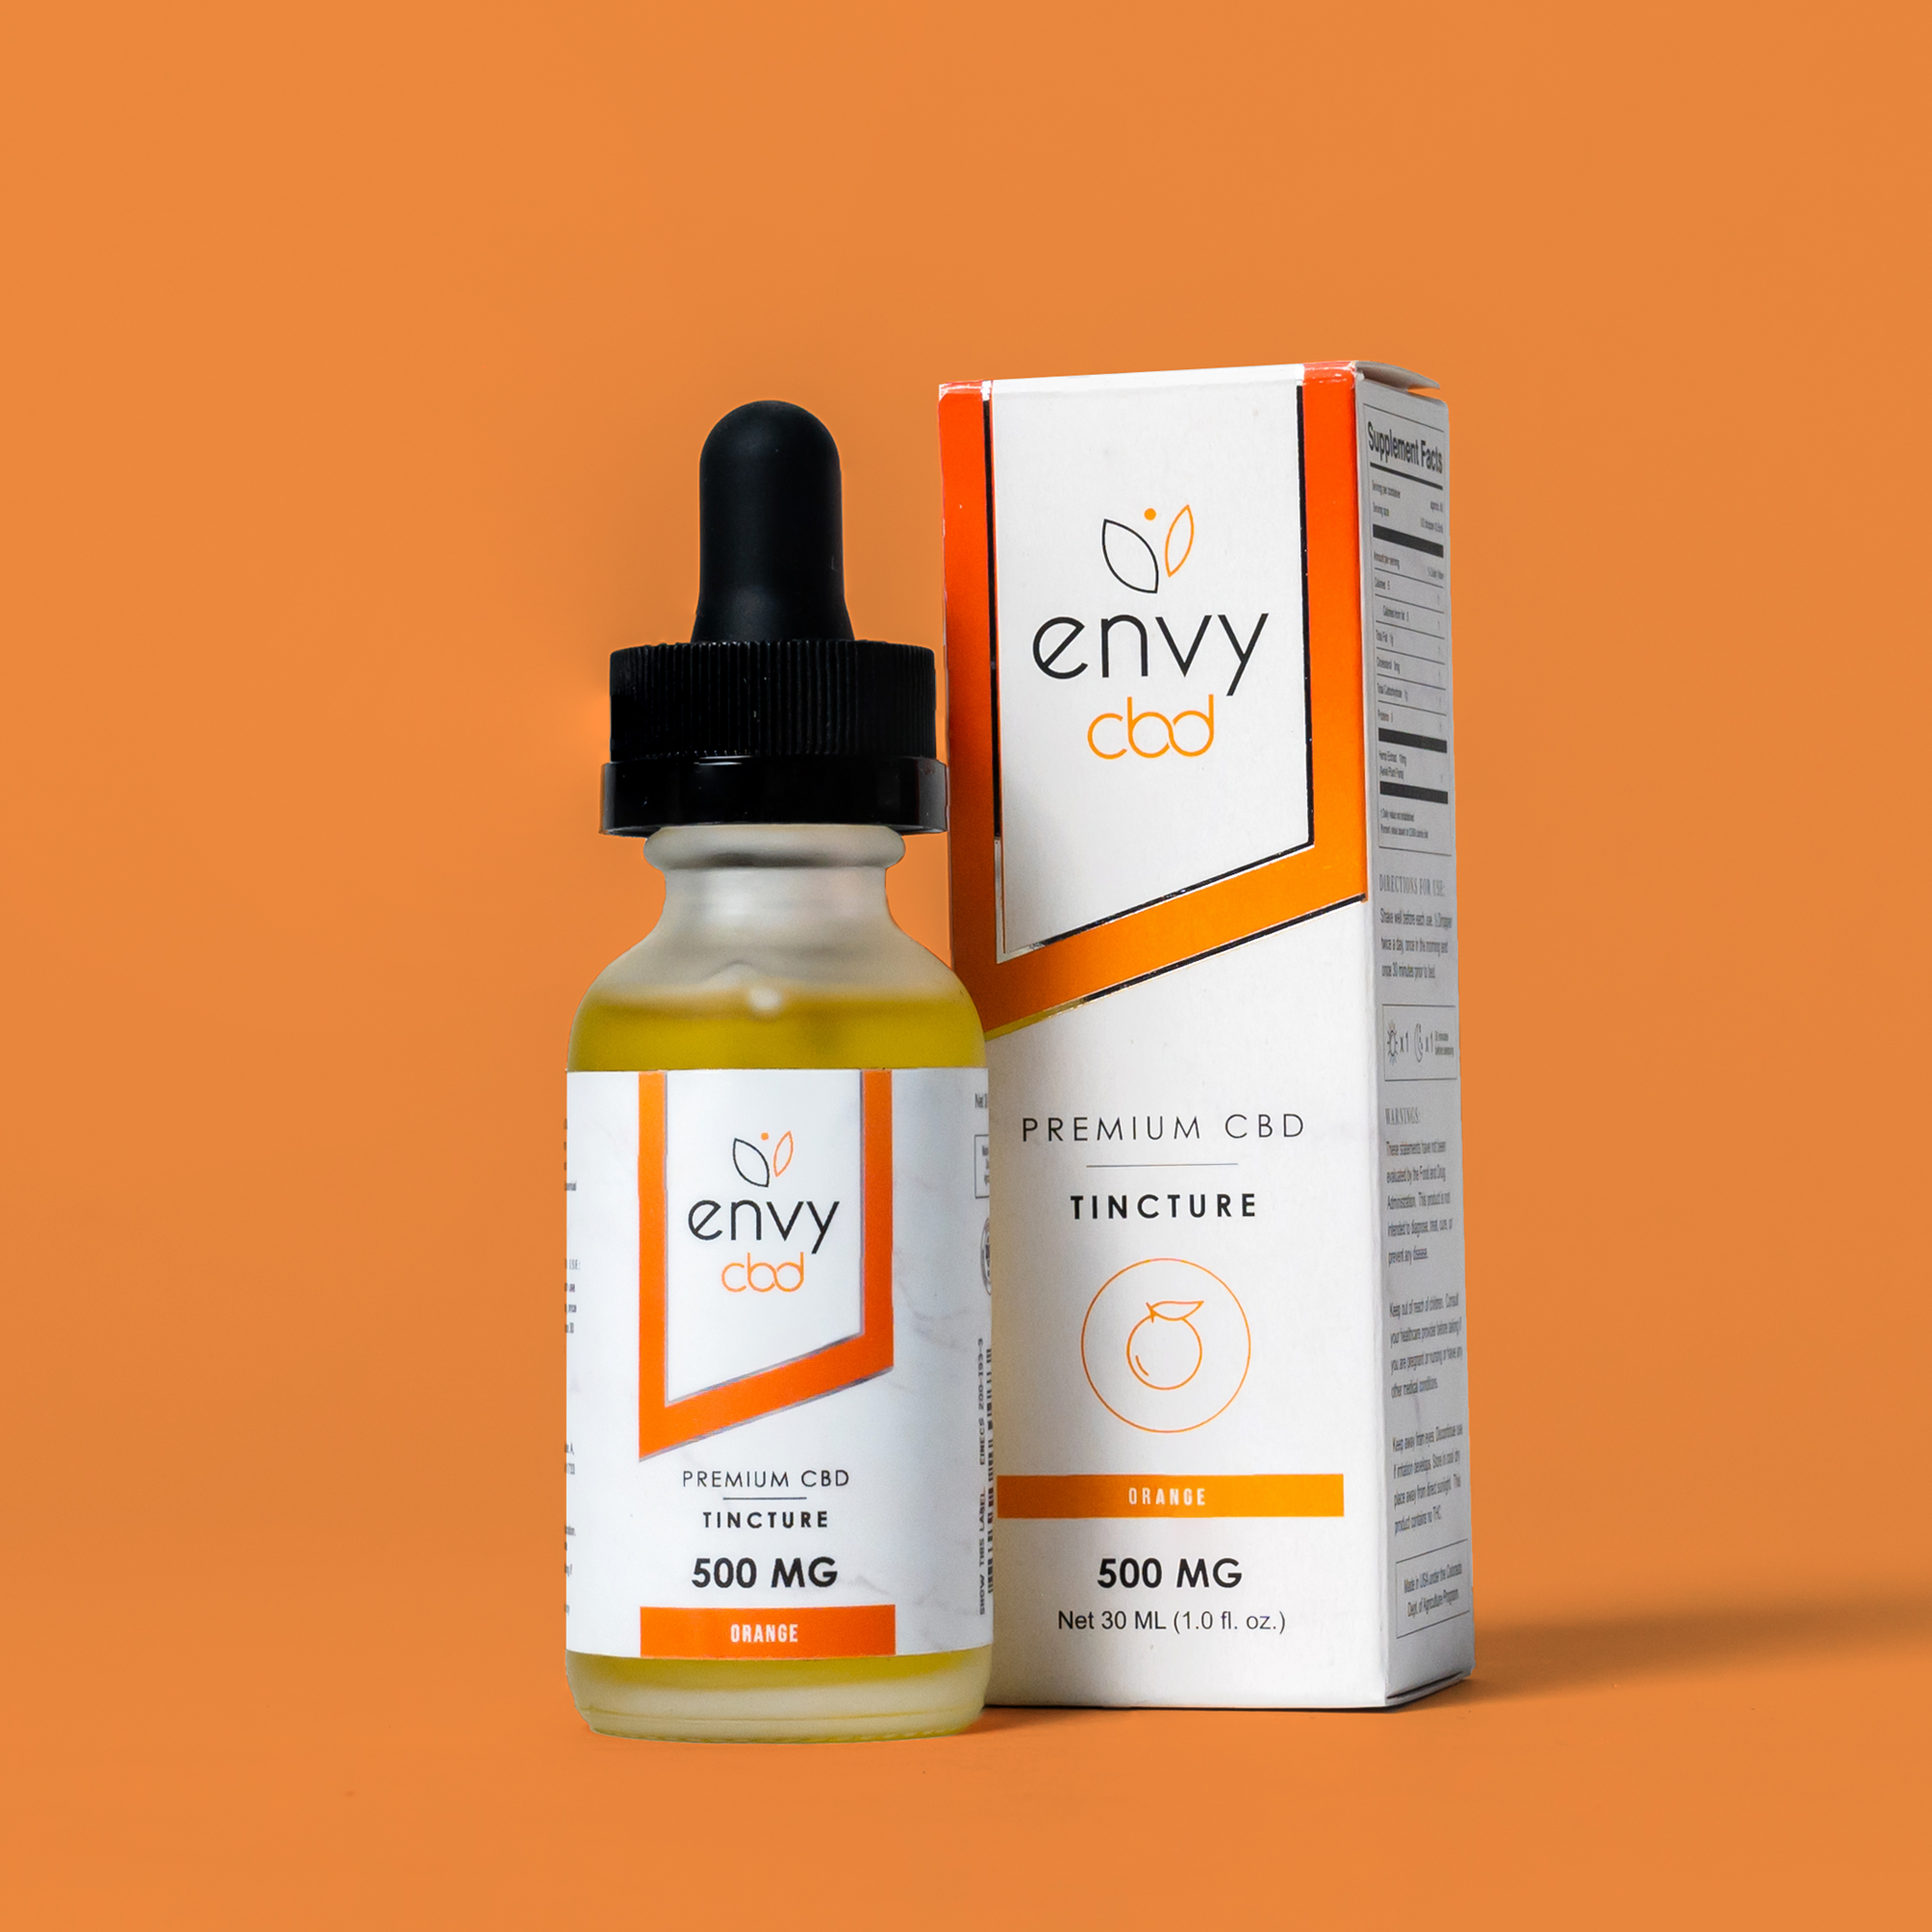 Envy CBD – Orange Broad Spectrum CBD Tincture Oil Best Price